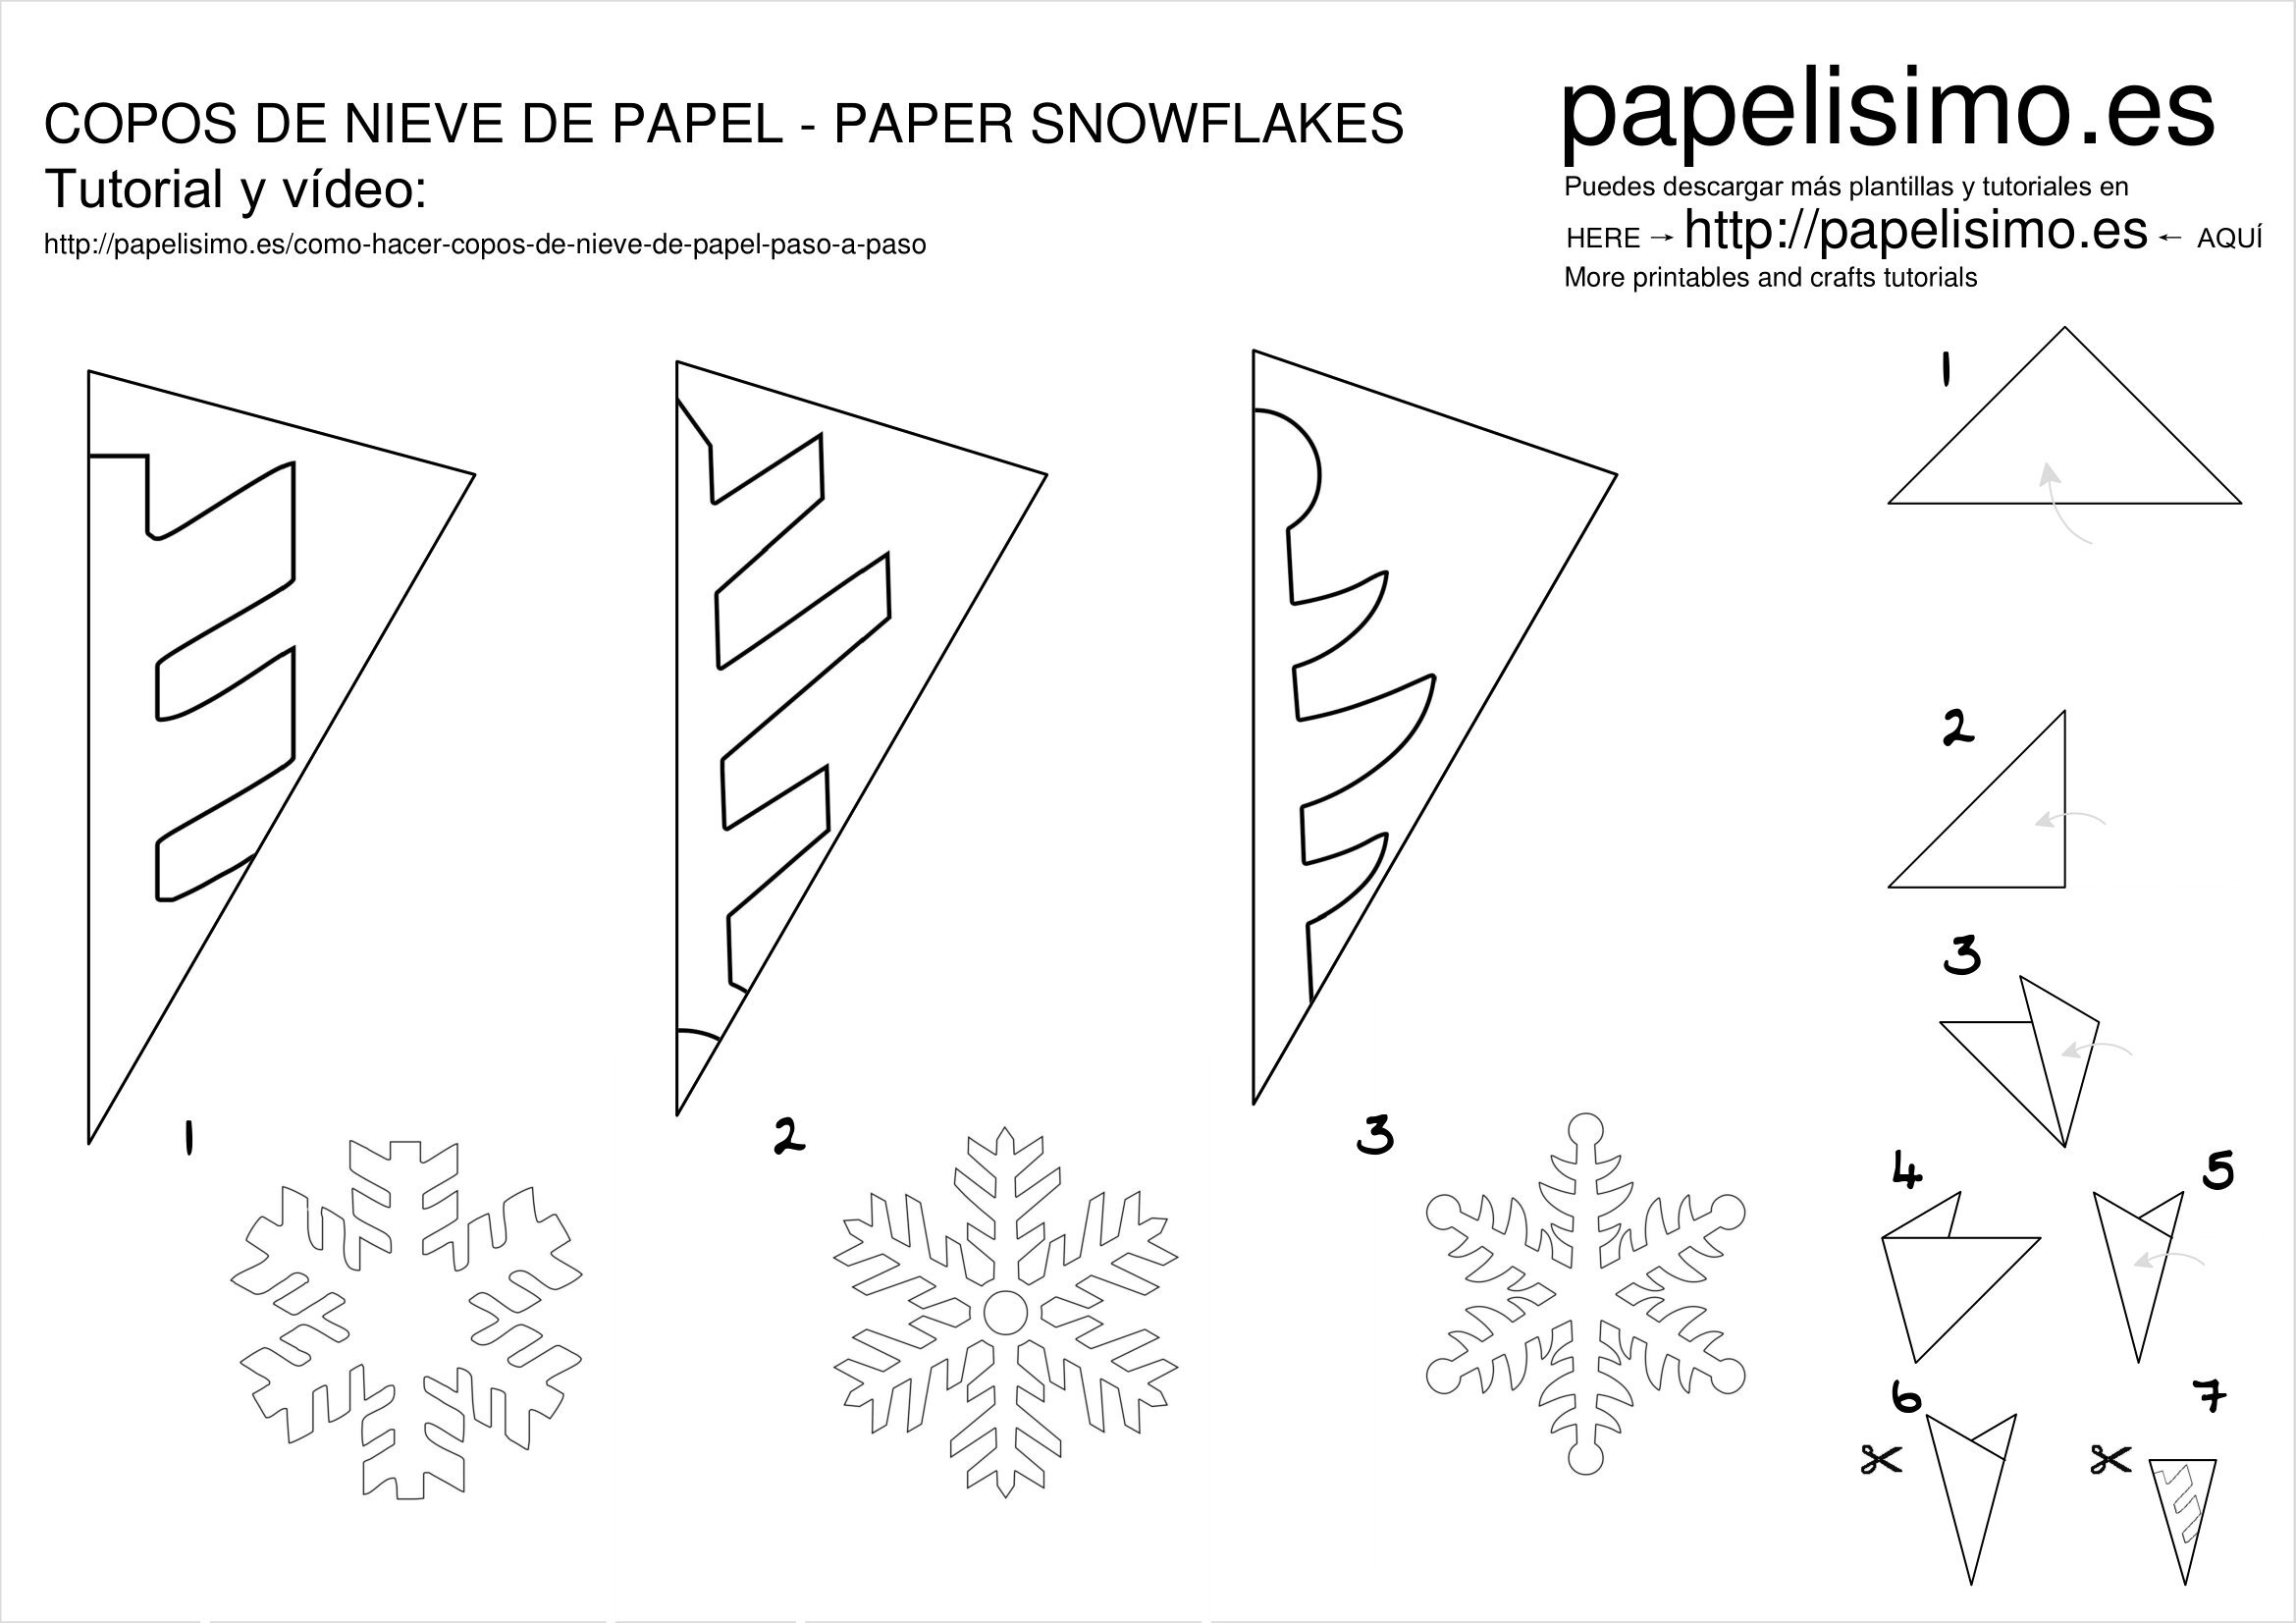 бумажные снежинки (фото из интернета)